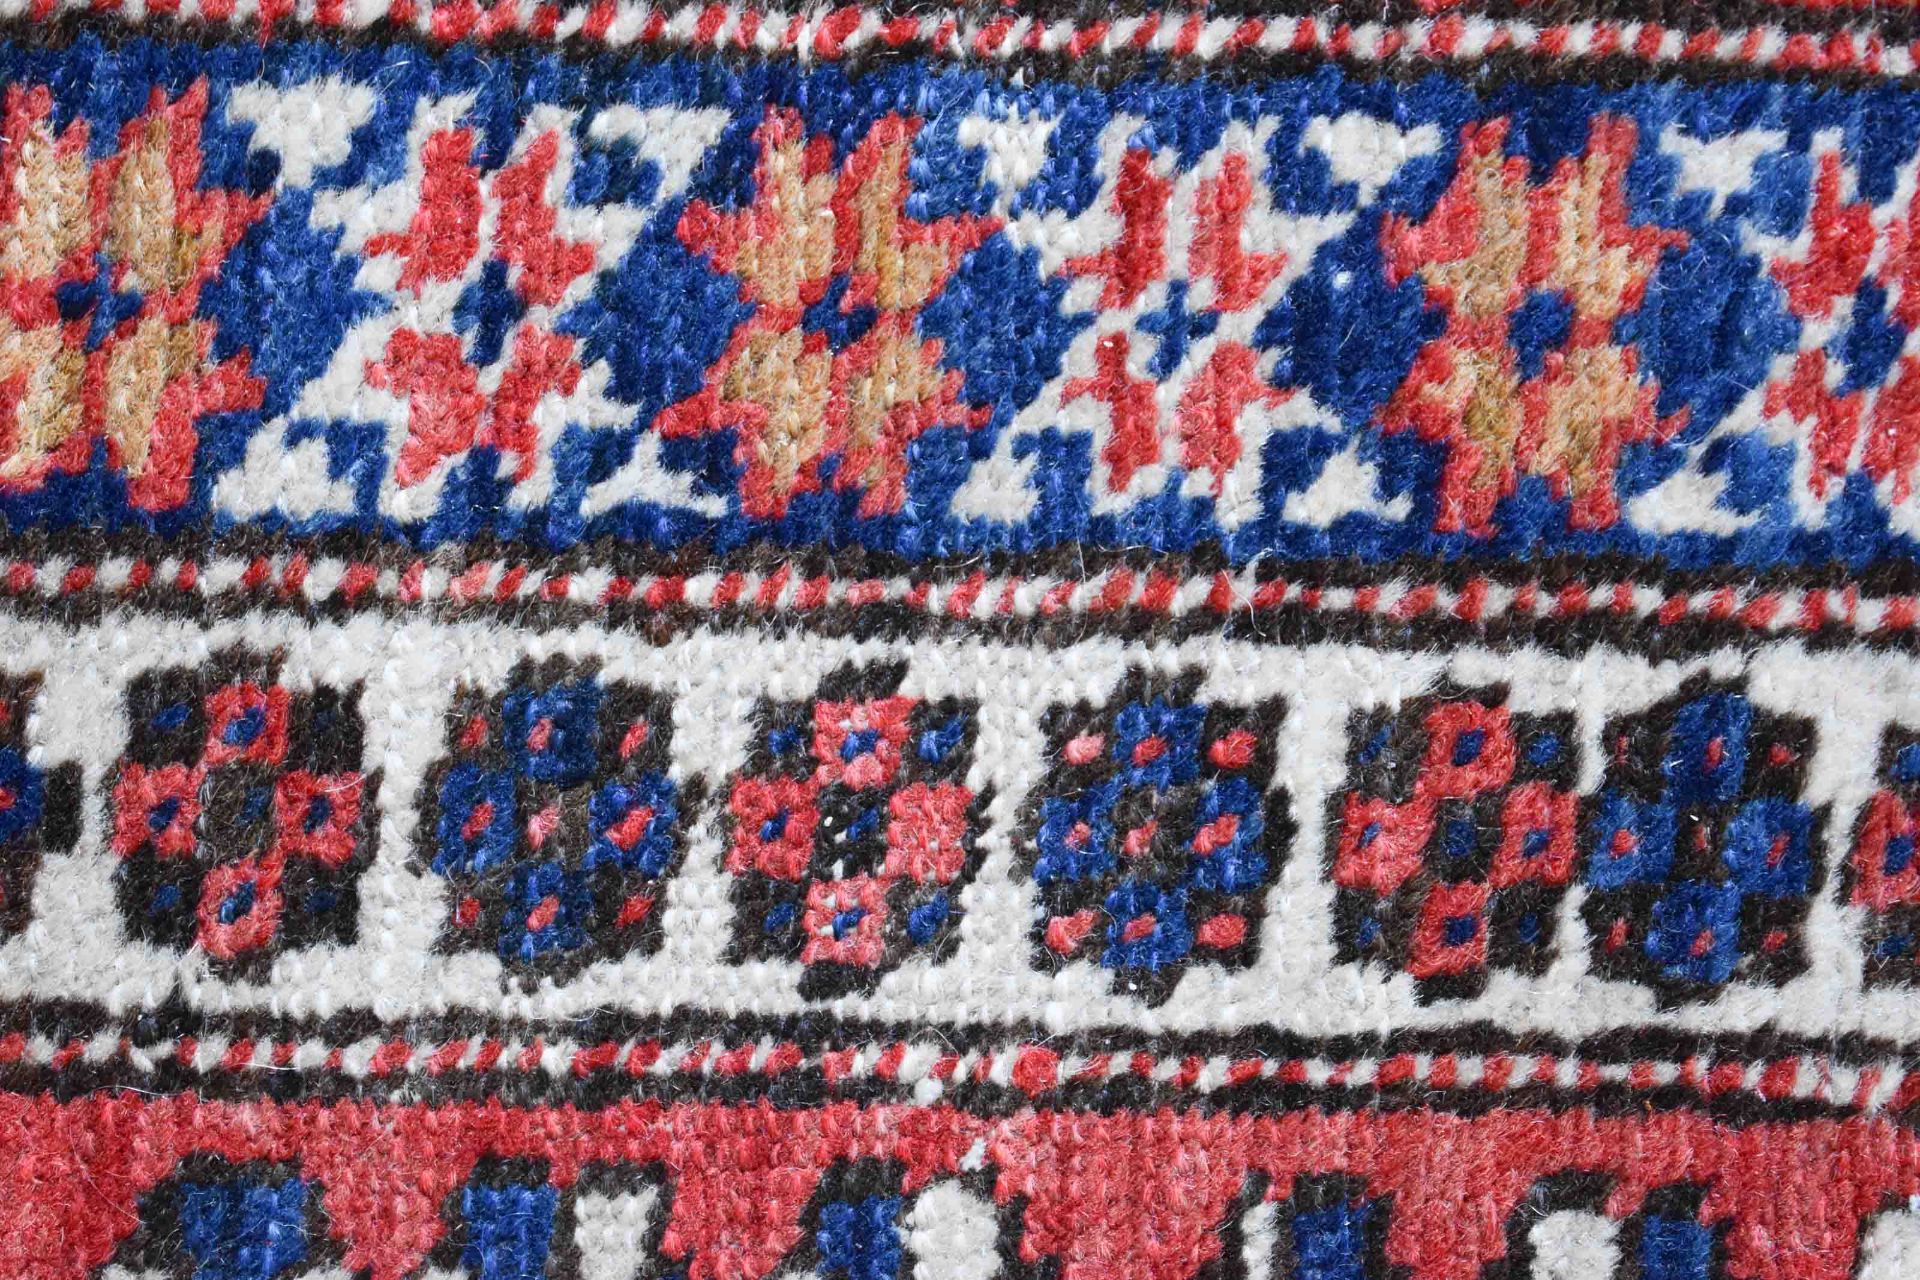 Alter Orientteppichhandgeknüpft, 2,60 m x 1,60 mOld oriental carpethand-knotted, 2.60 mx 1.60 m - Bild 3 aus 4